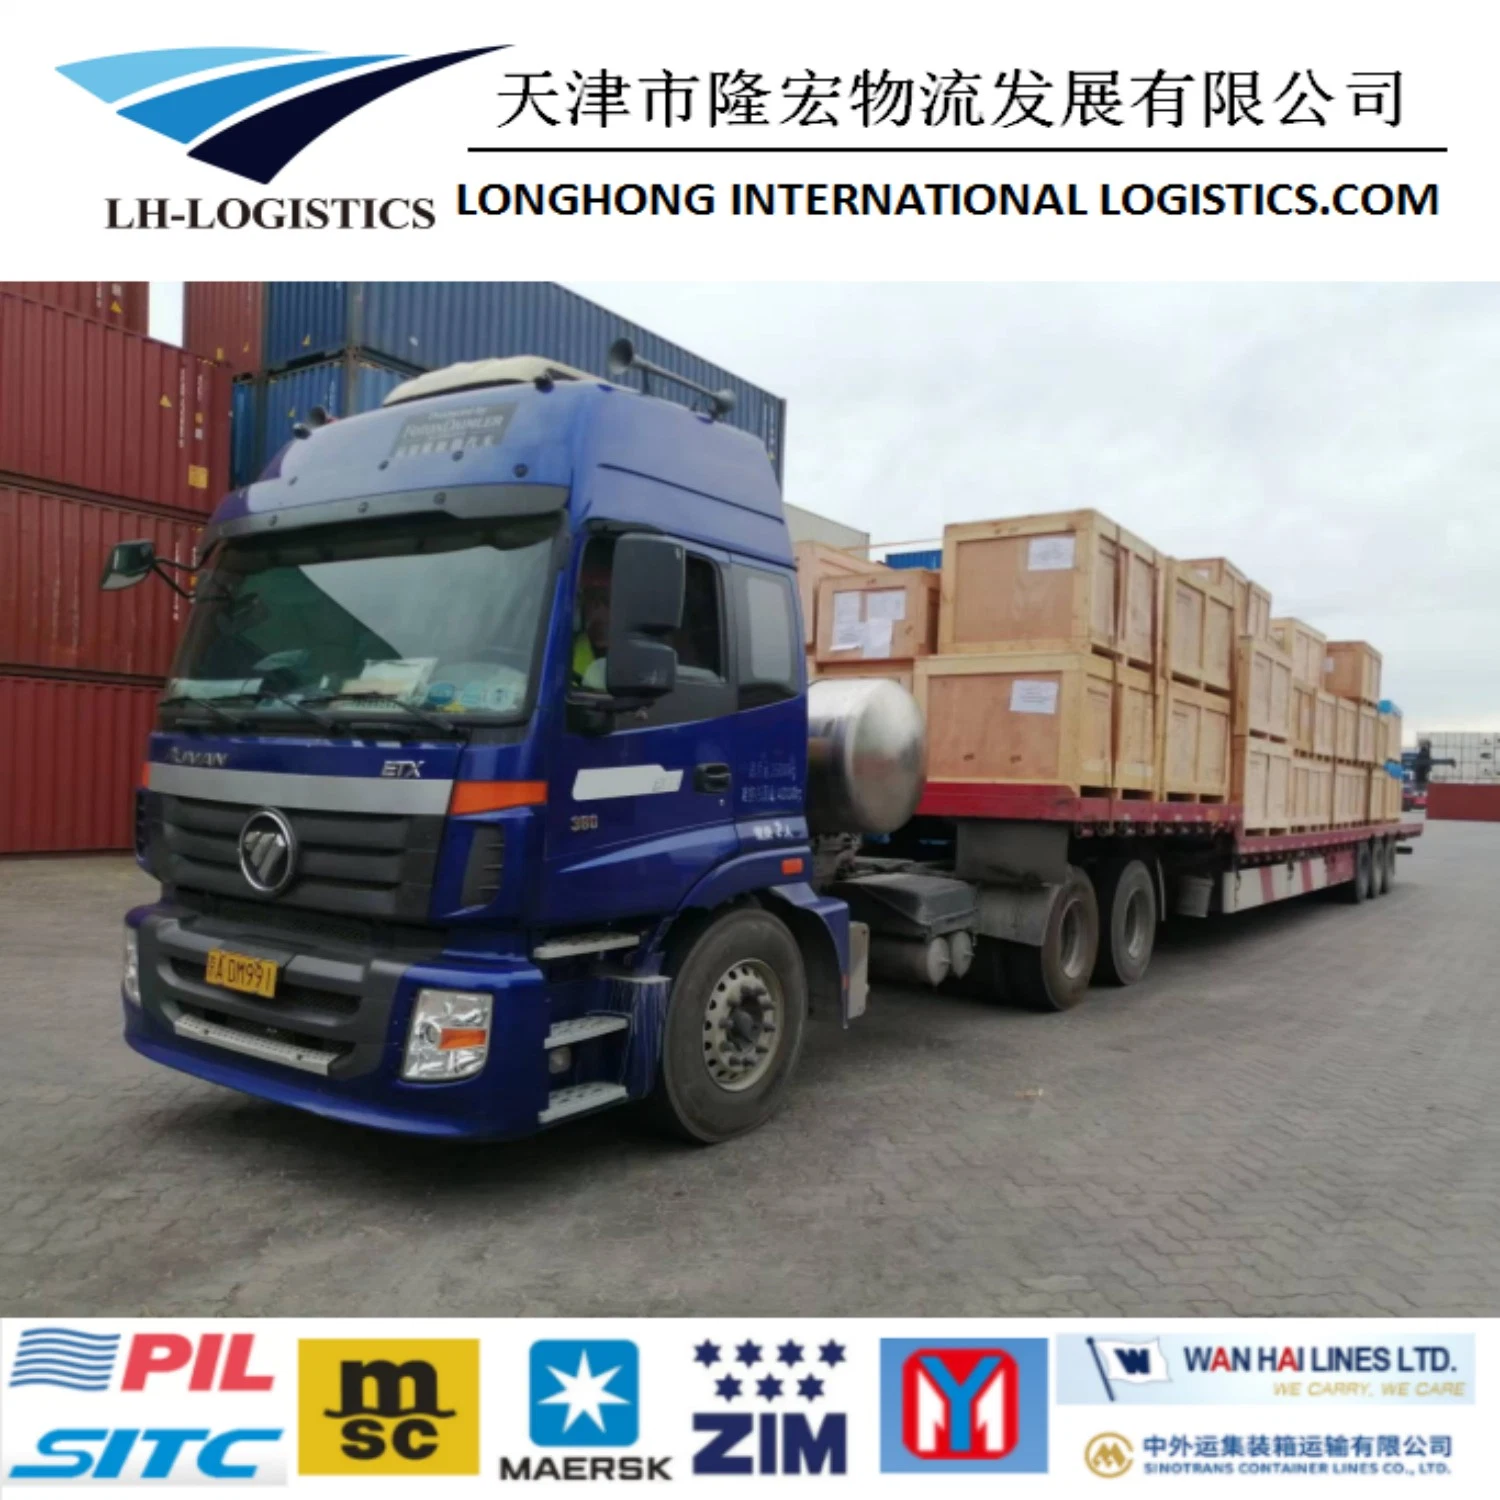 Service fiable de transport transfrontalier de camion expédition de la Chine à Bichkek via Torugart